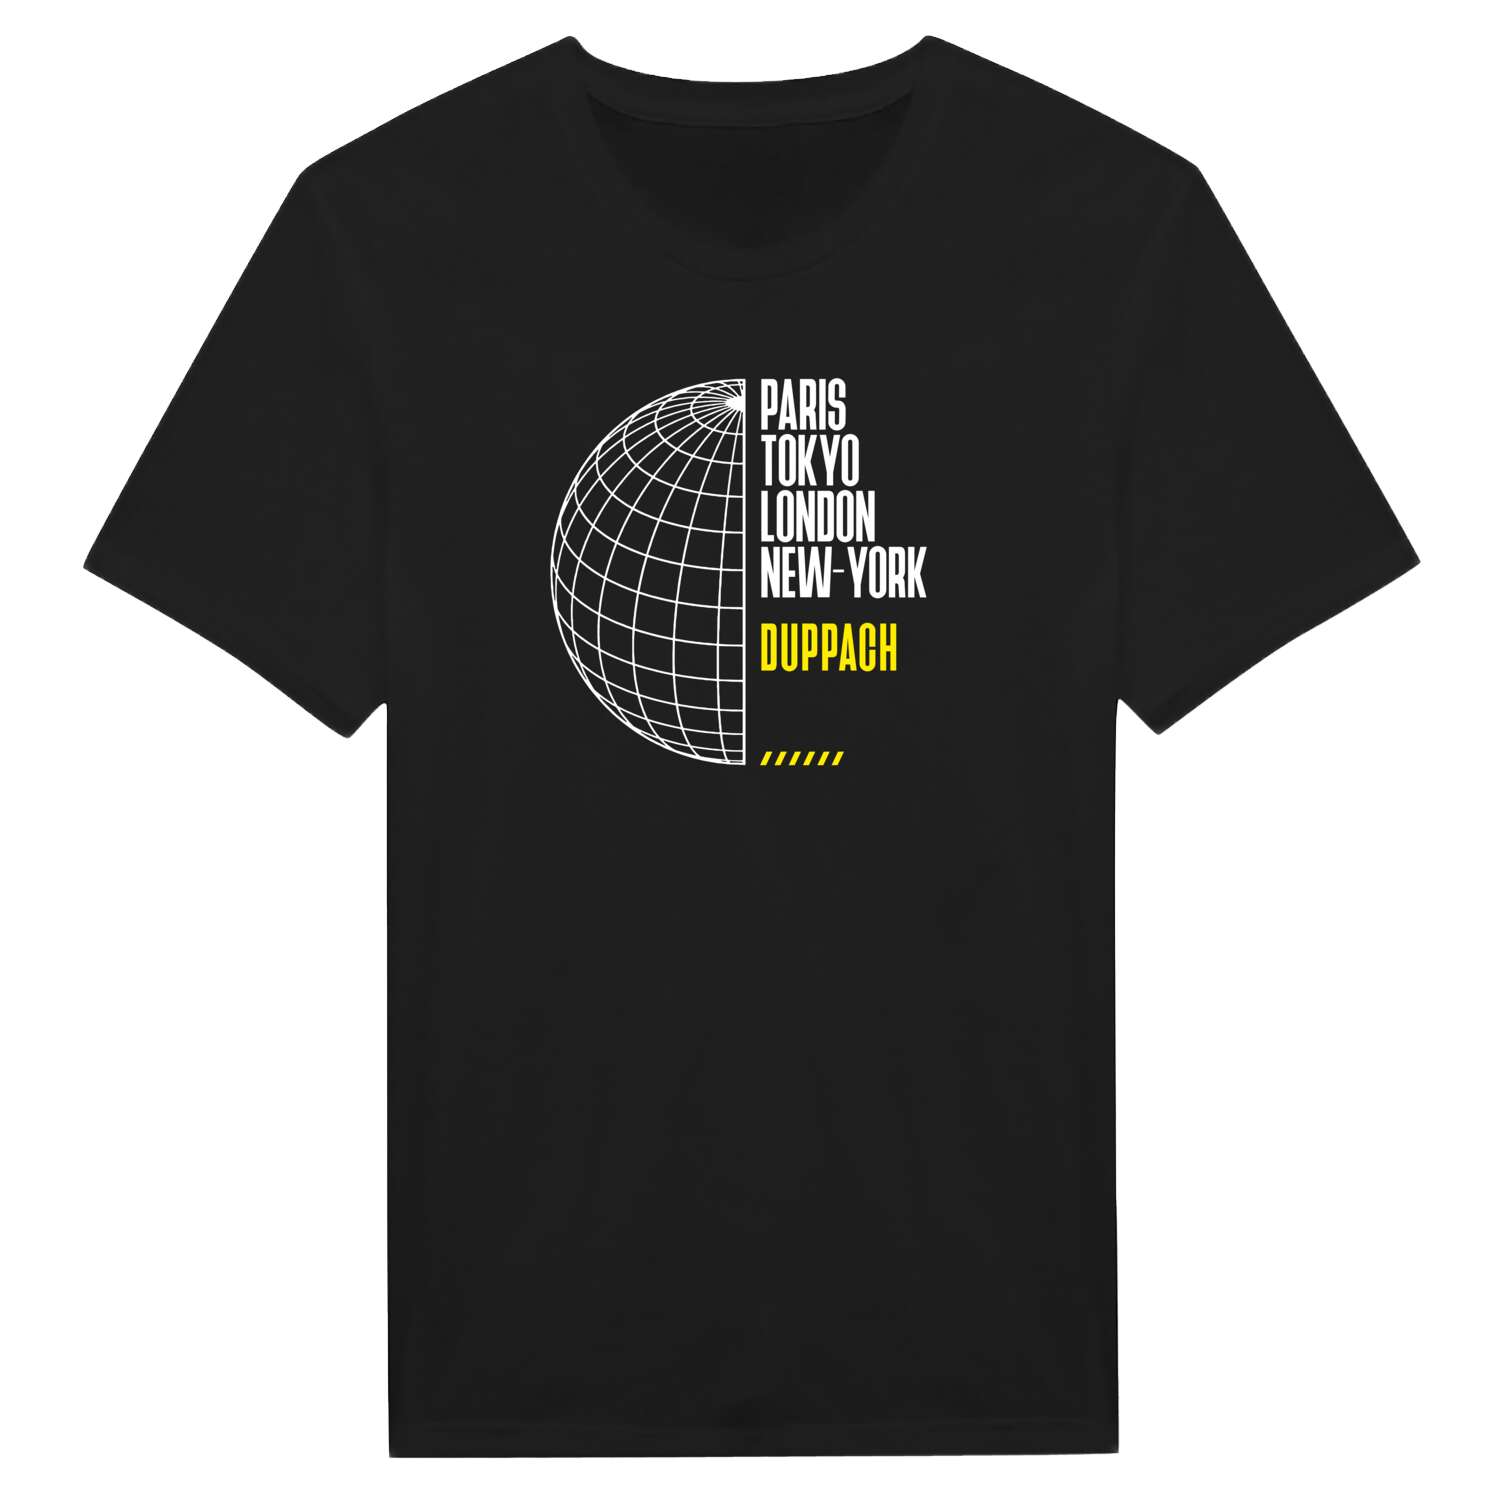 Duppach T-Shirt »Paris Tokyo London«